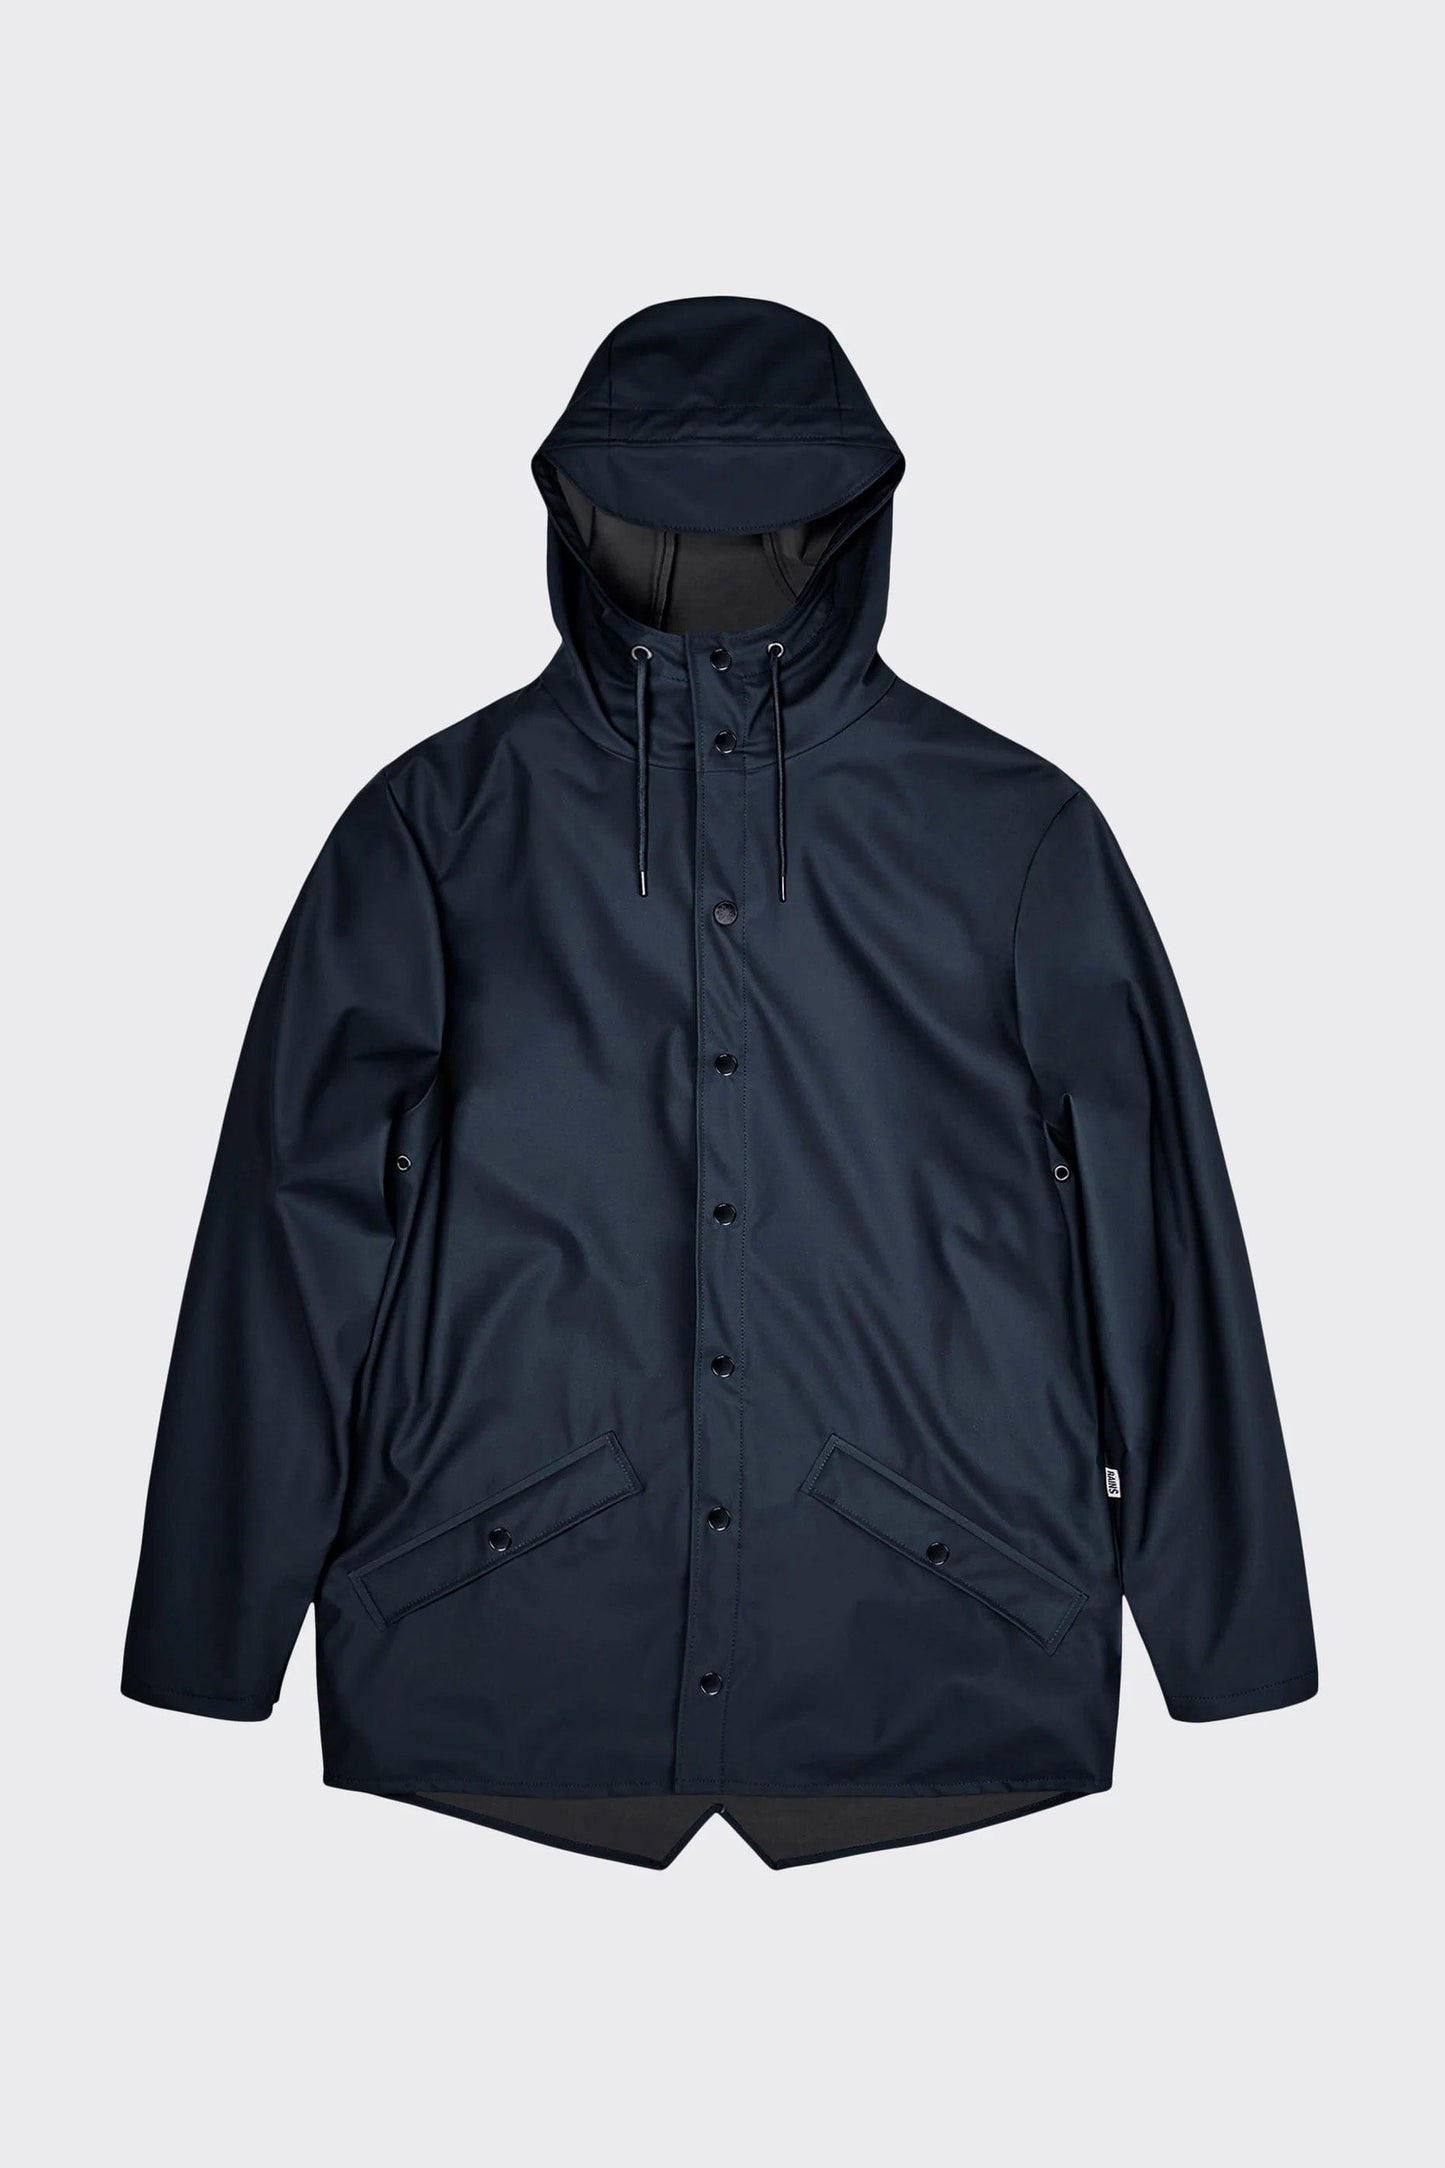 XS / Navy Custom RAINS Jacket